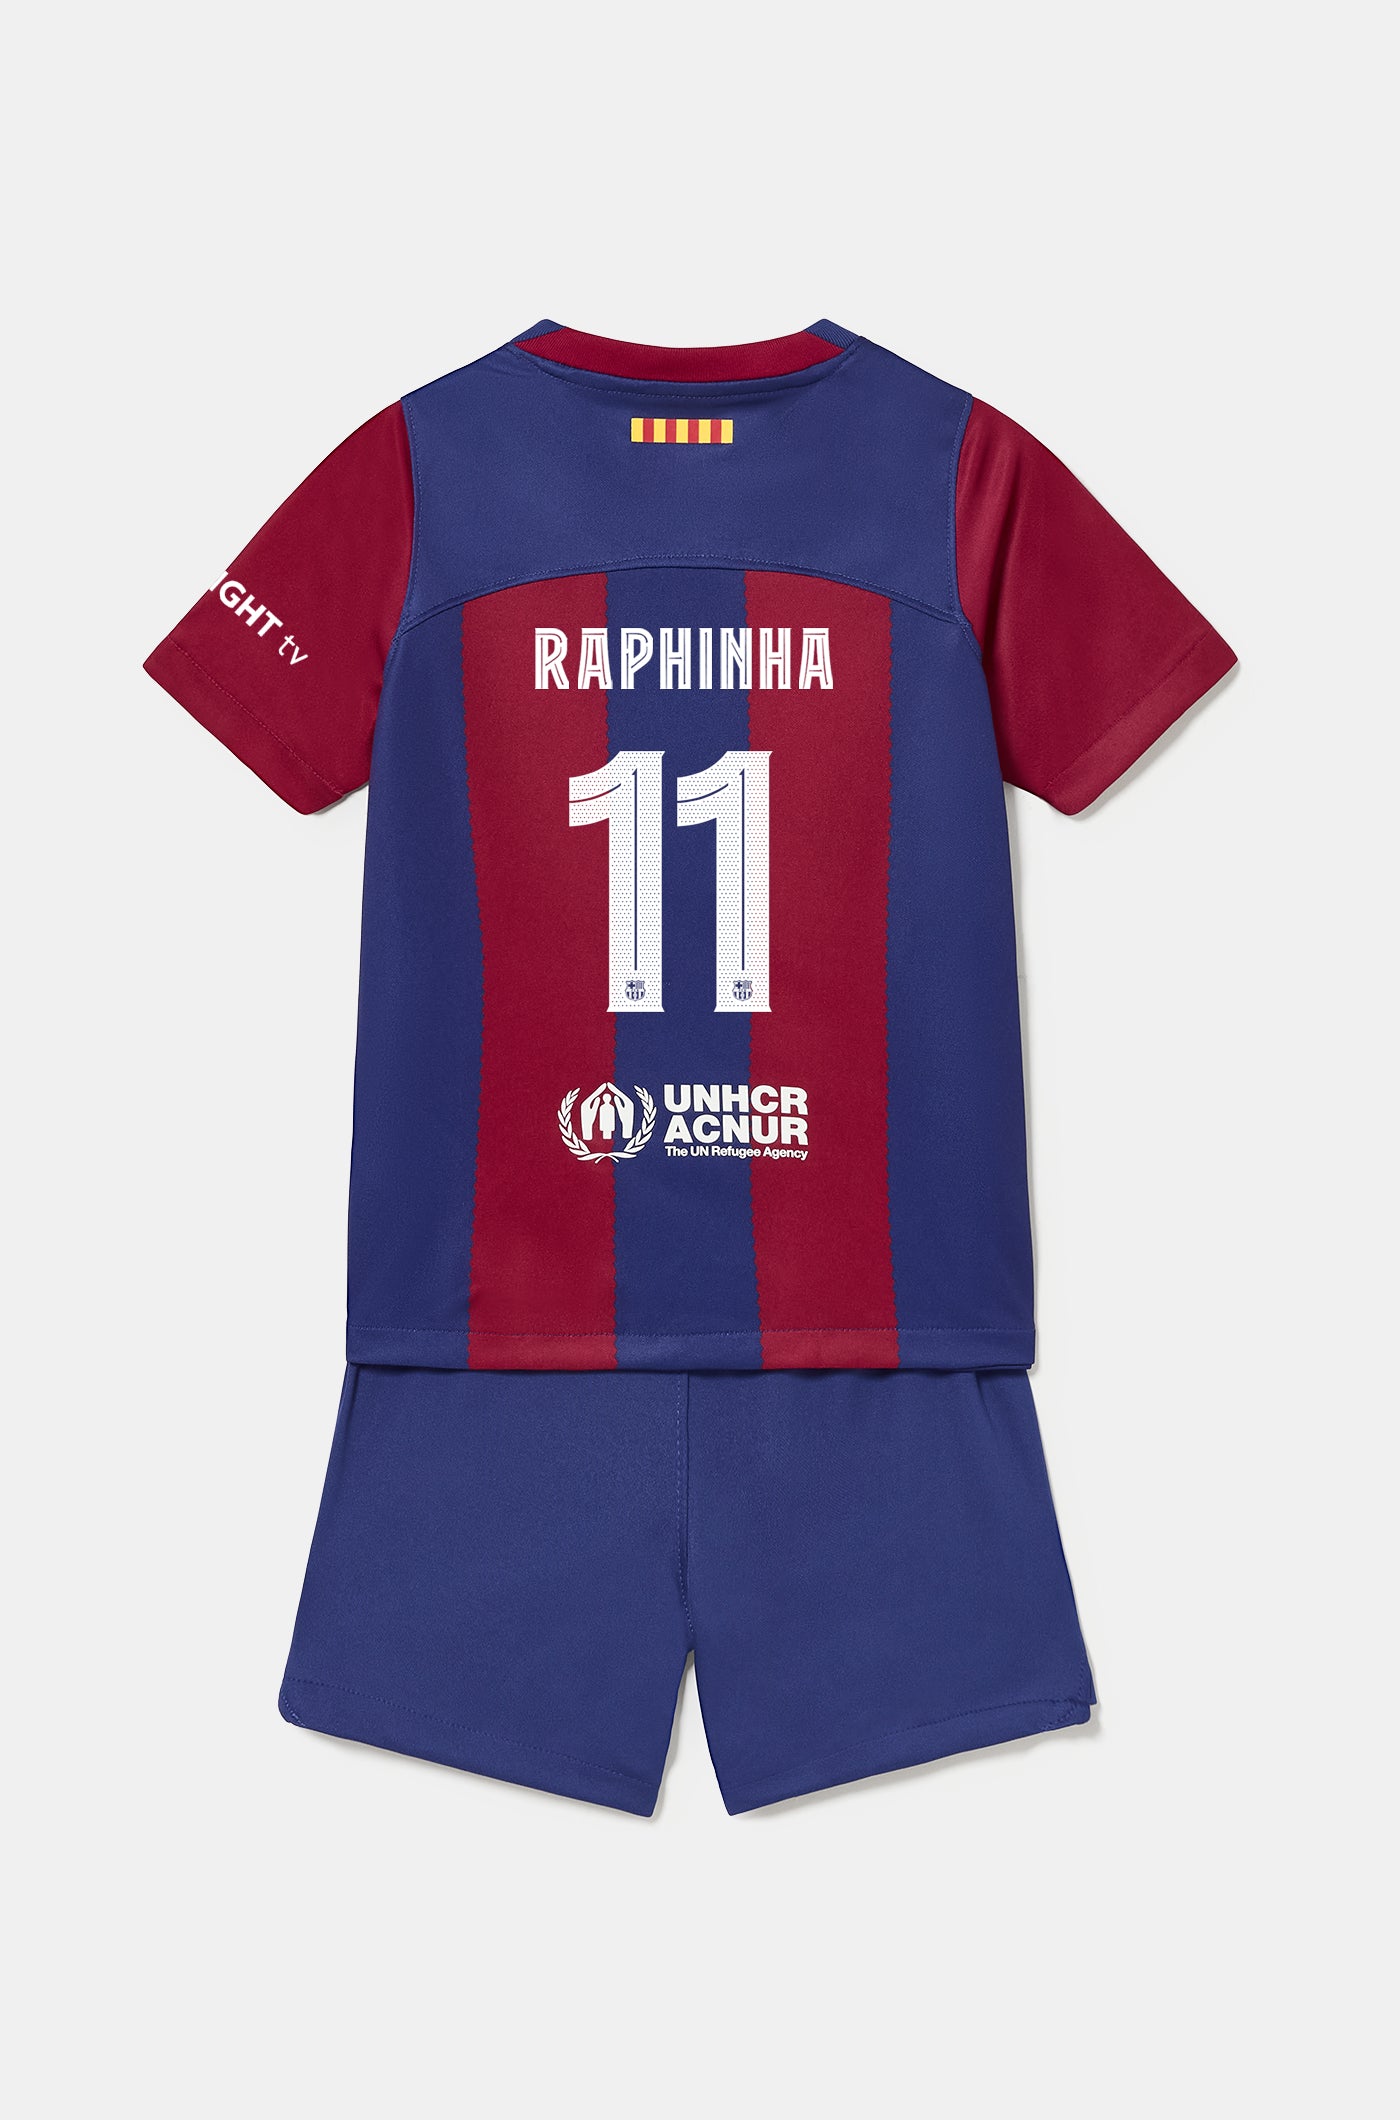 Conjunt primer equipament FC Barcelona 23/24 - Nen/a petit/a - RAPHINHA